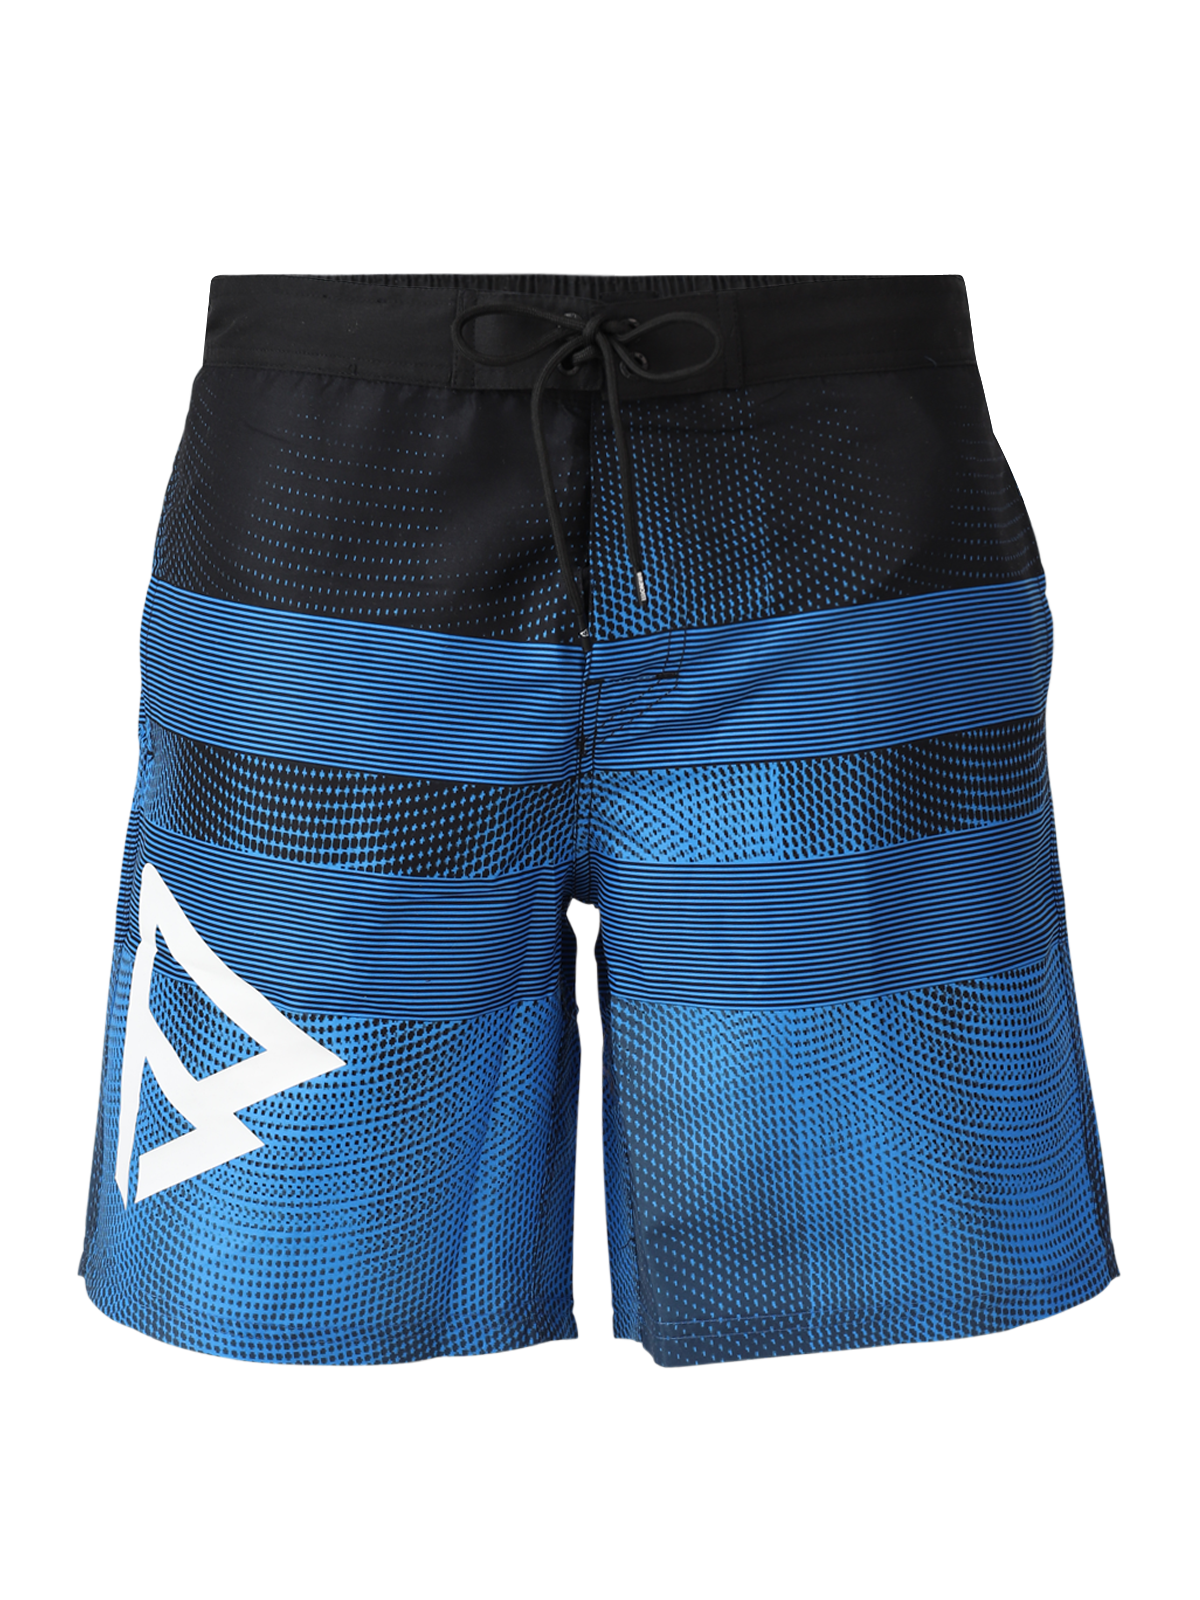 Archal Men Long Swim Shorts | Blue